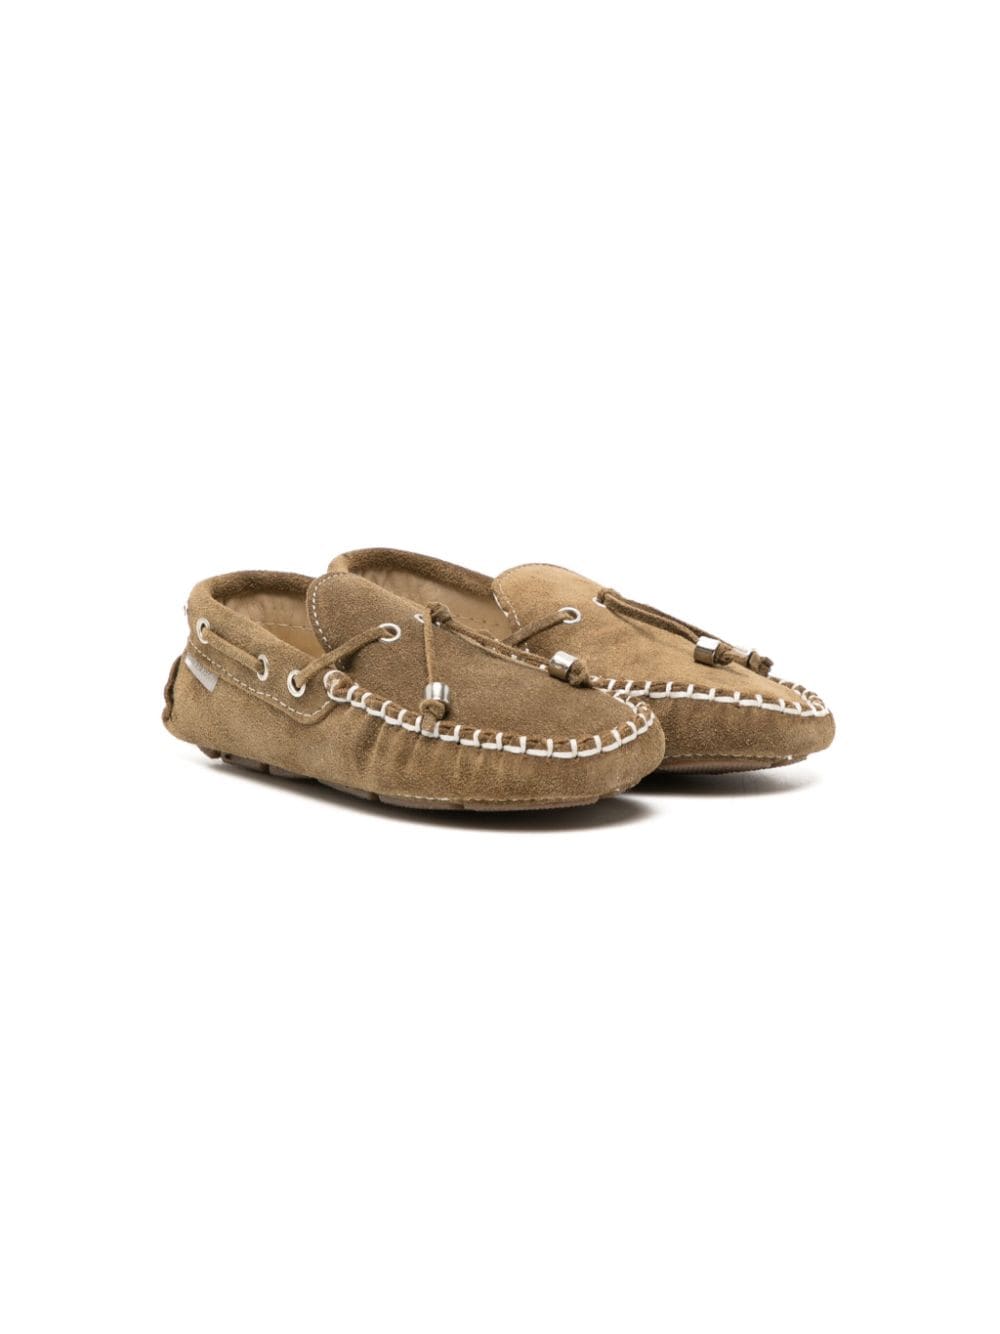 BabyWalker contrast-stitch suede loafers - Brown von BabyWalker